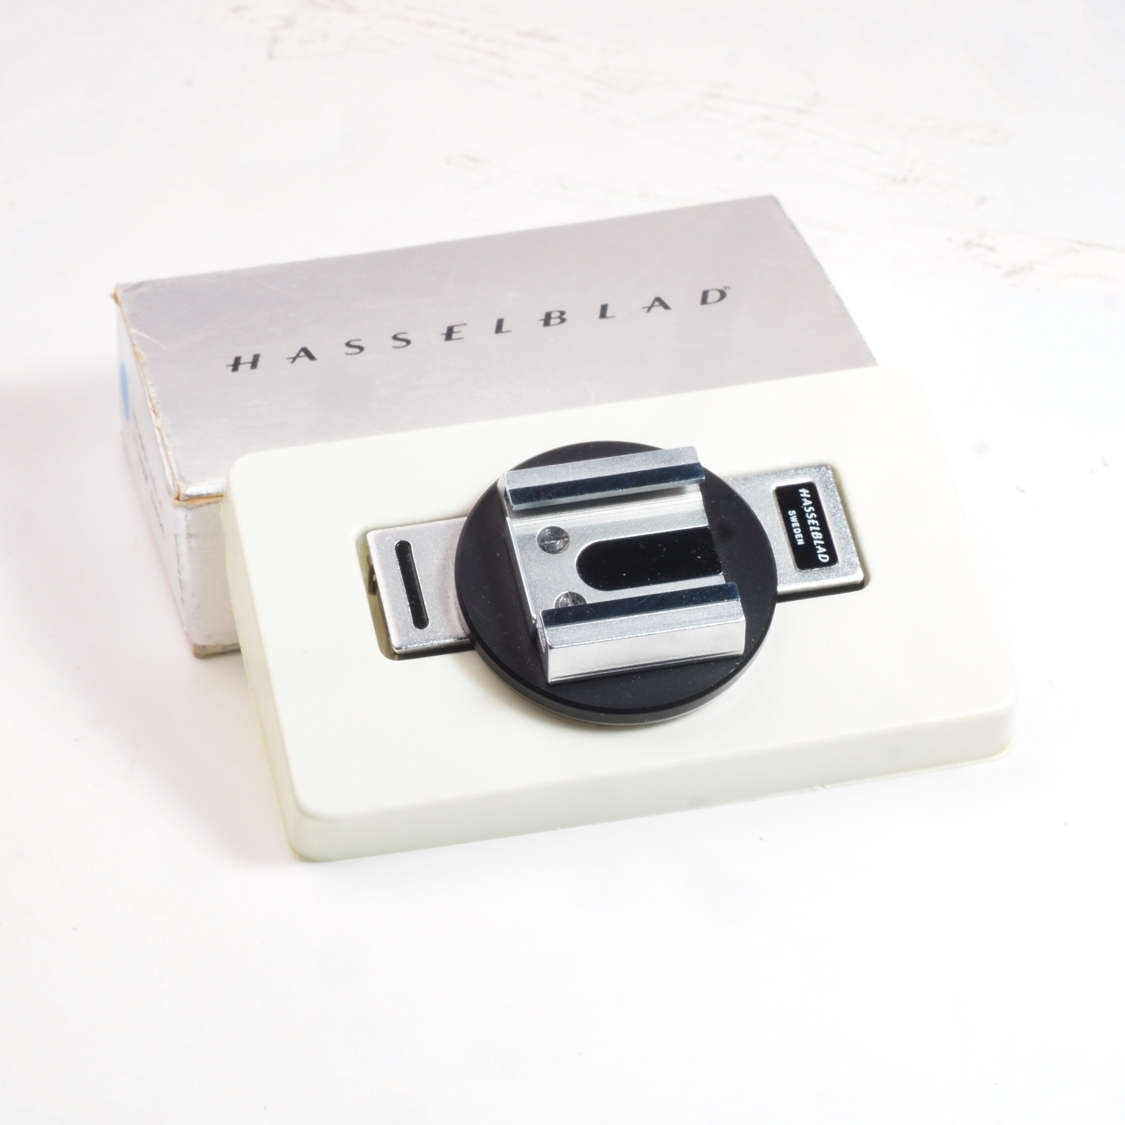 Hasselblad Adjustable Flash Shoe (43125) (LN-) Used